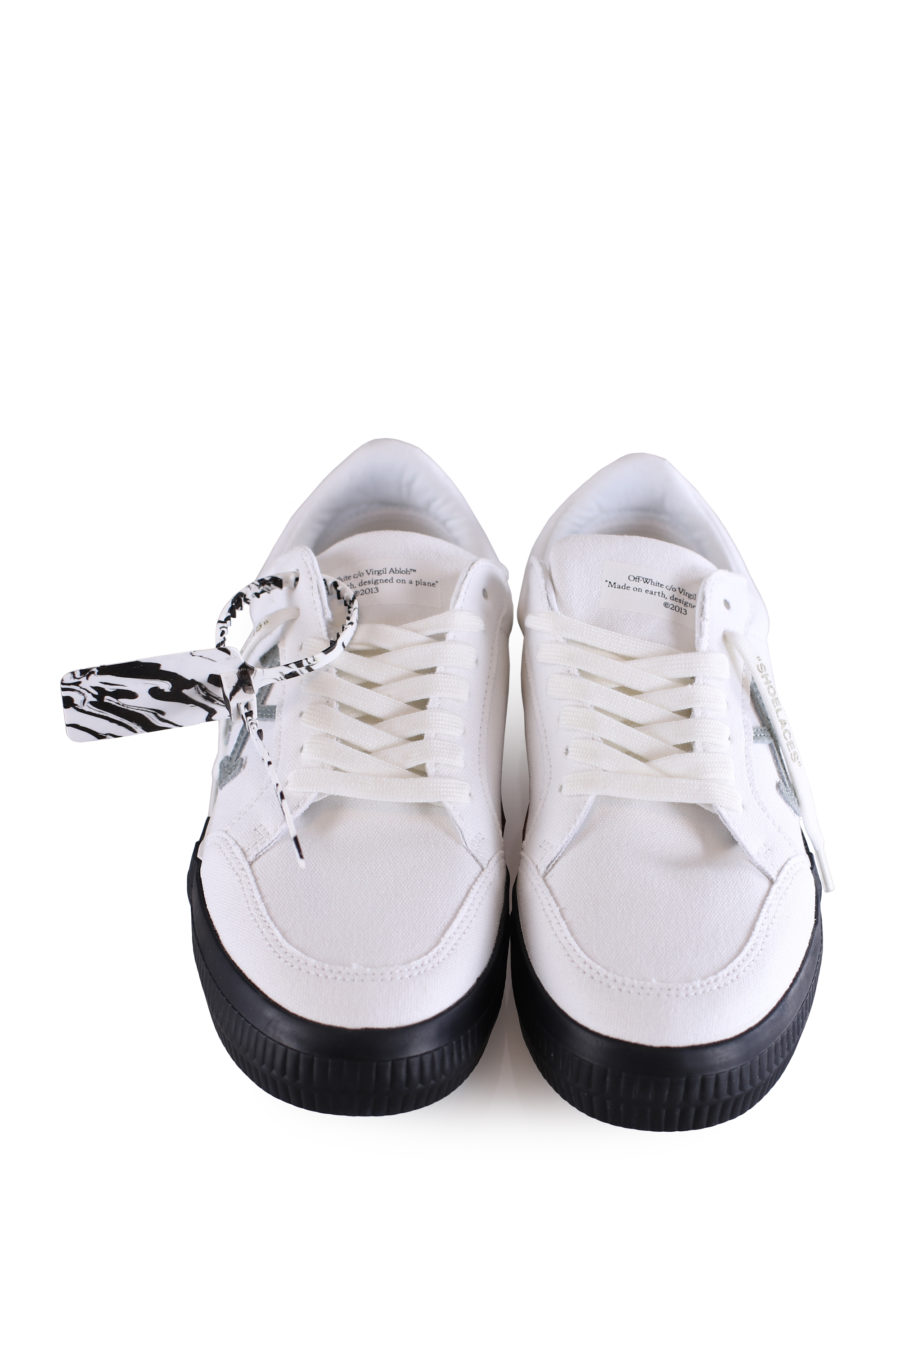 Zapatillas bajas "Vulcanized" de color blanco - IMG 0672